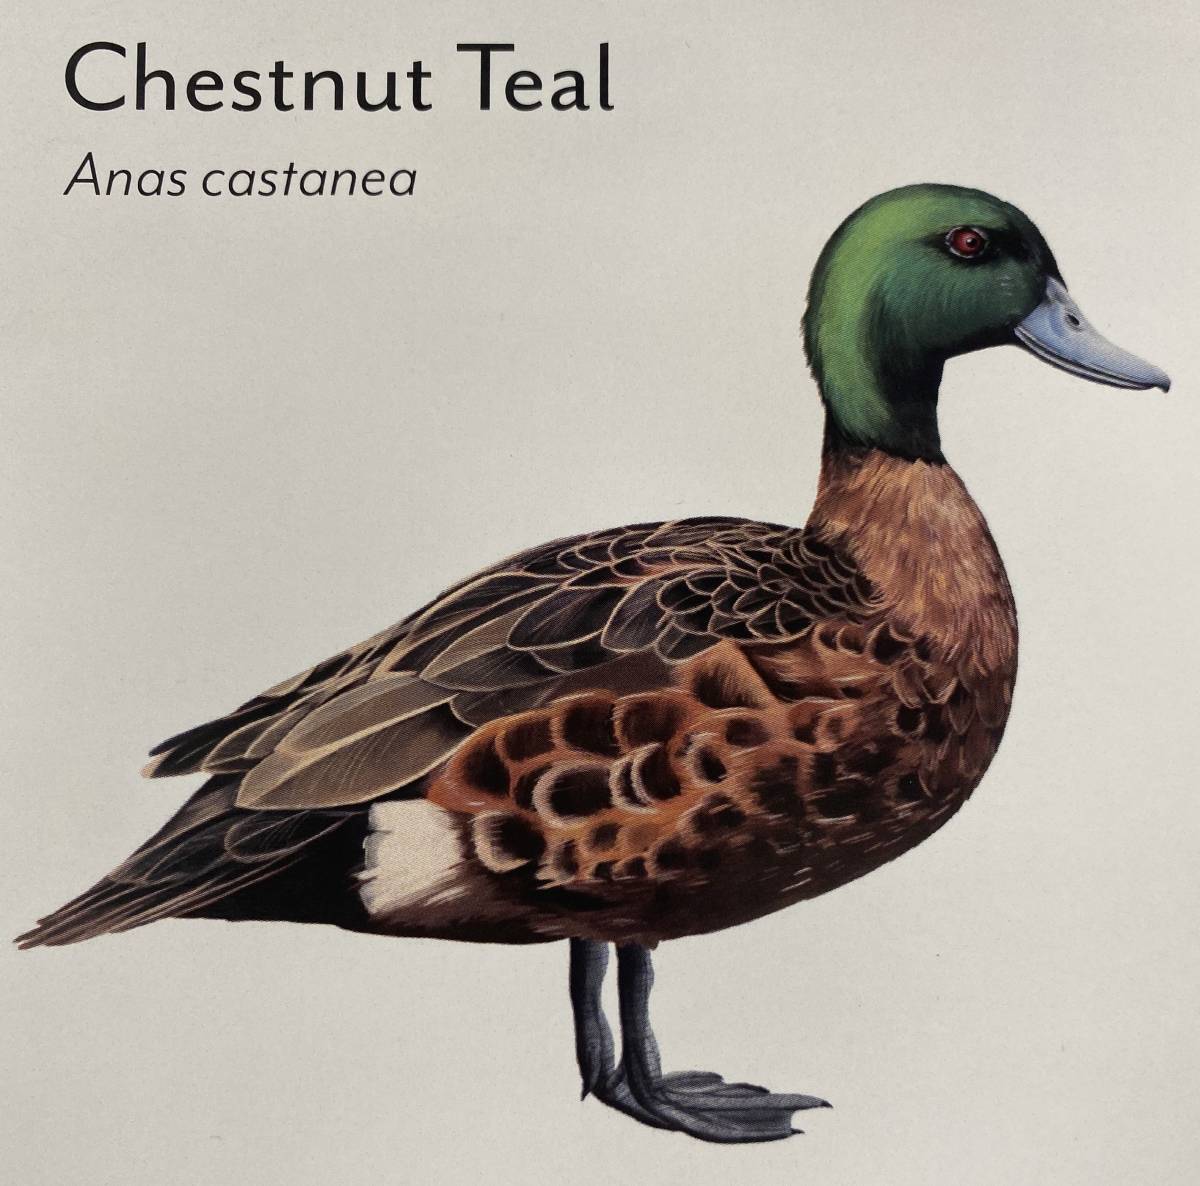 Ducks of Tasmania Chestnut Teal